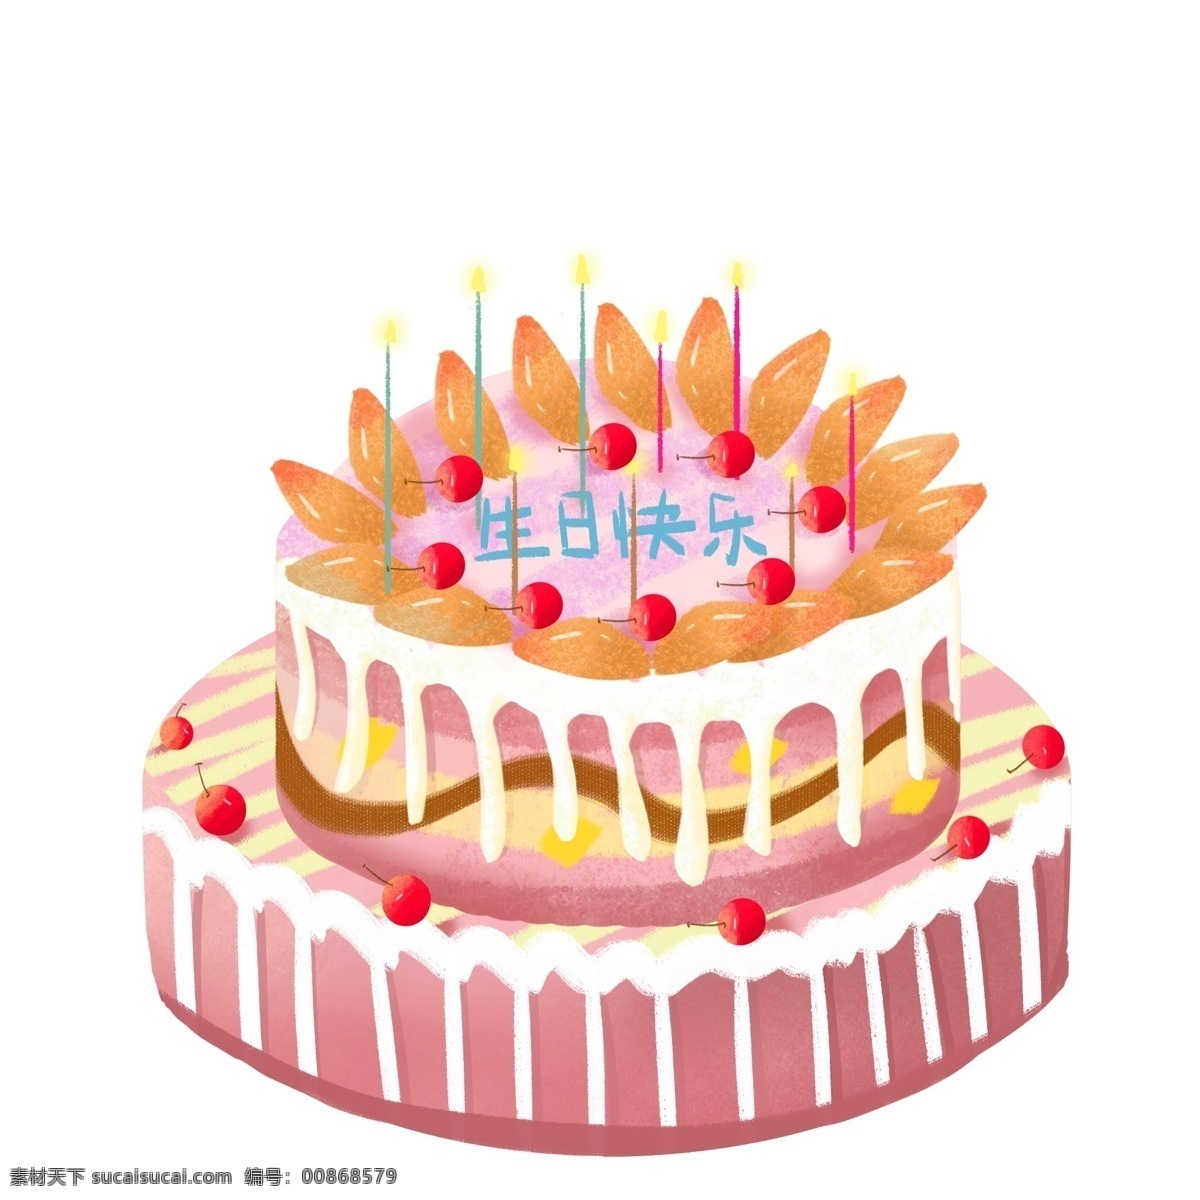 蛋糕 可爱 生日 原创 生日蛋糕 生日快乐